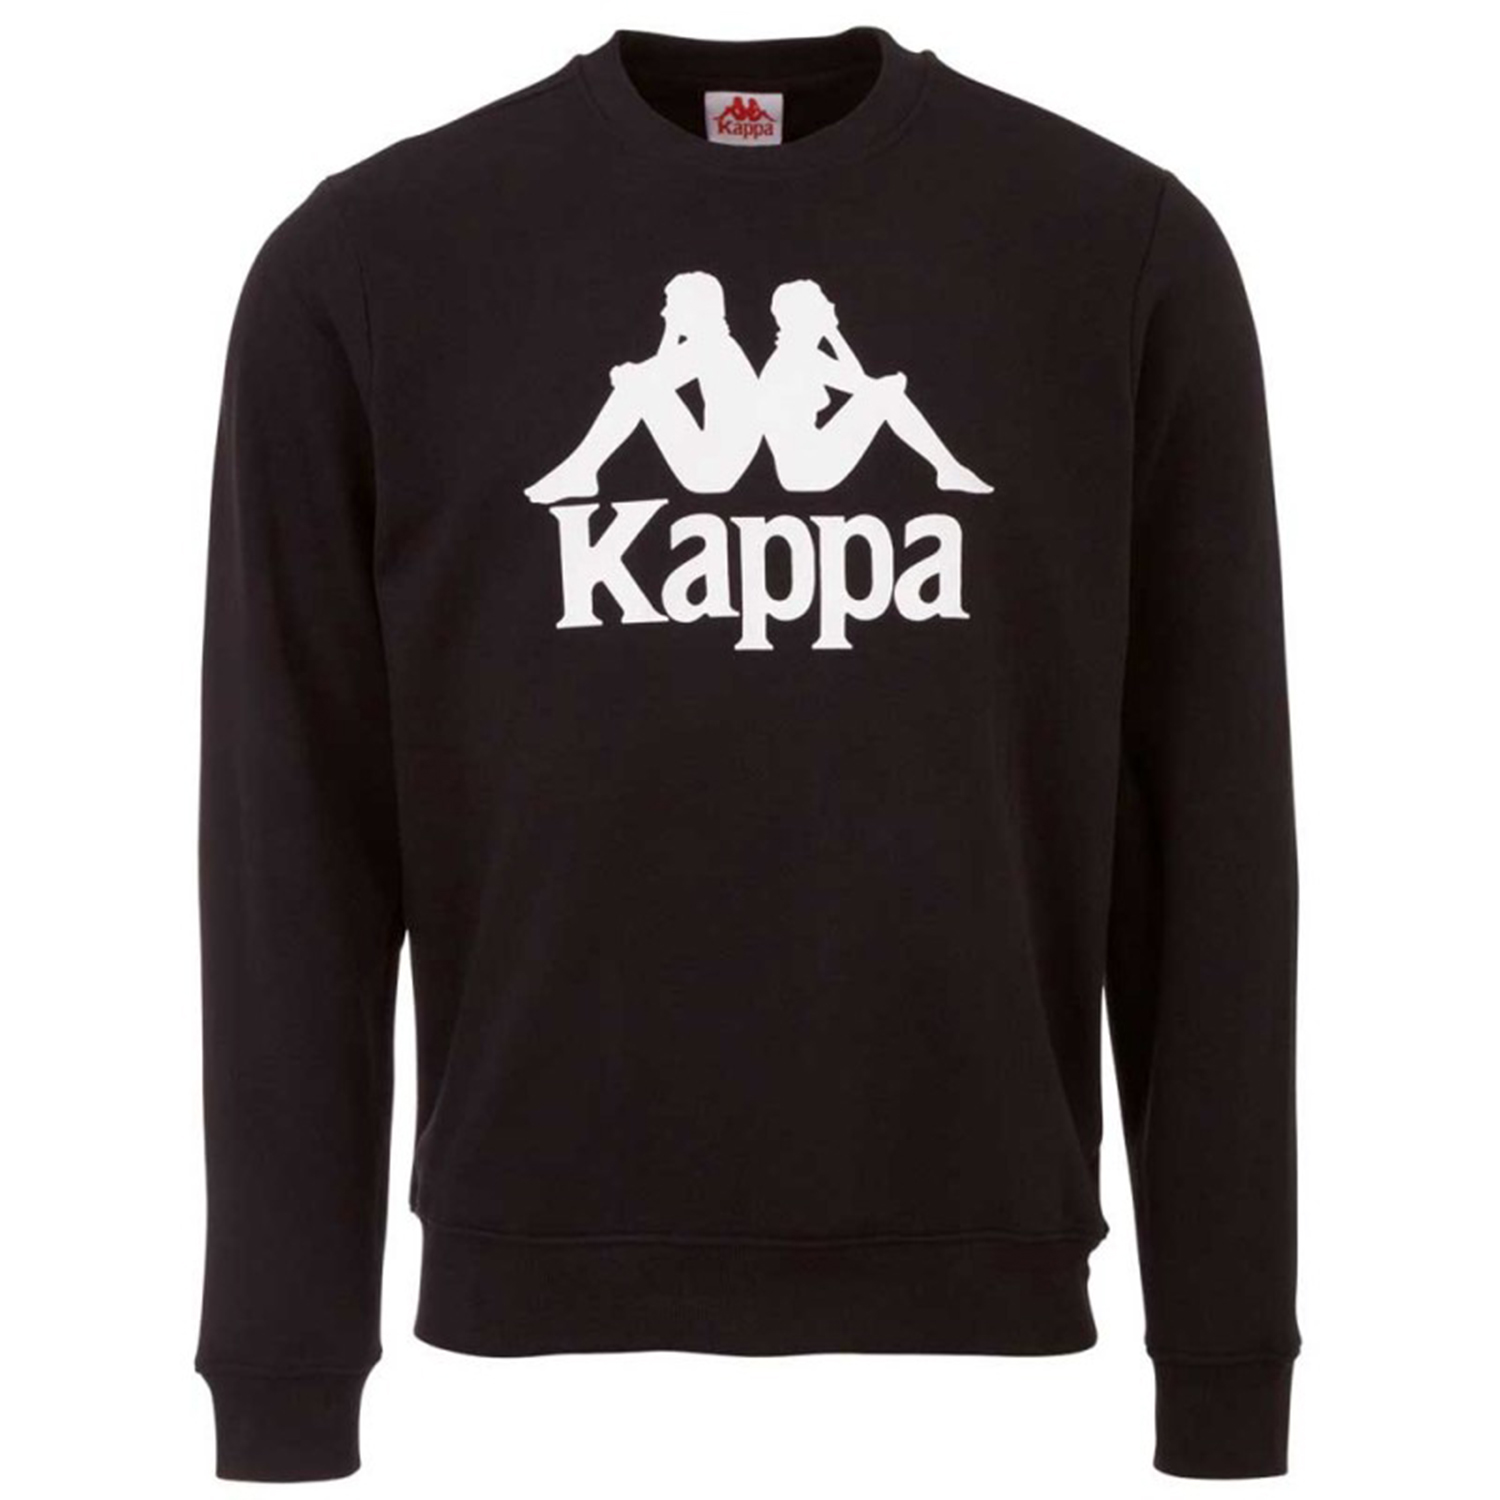 Kappa Herren Sweatshirt schwarz 703797 194006